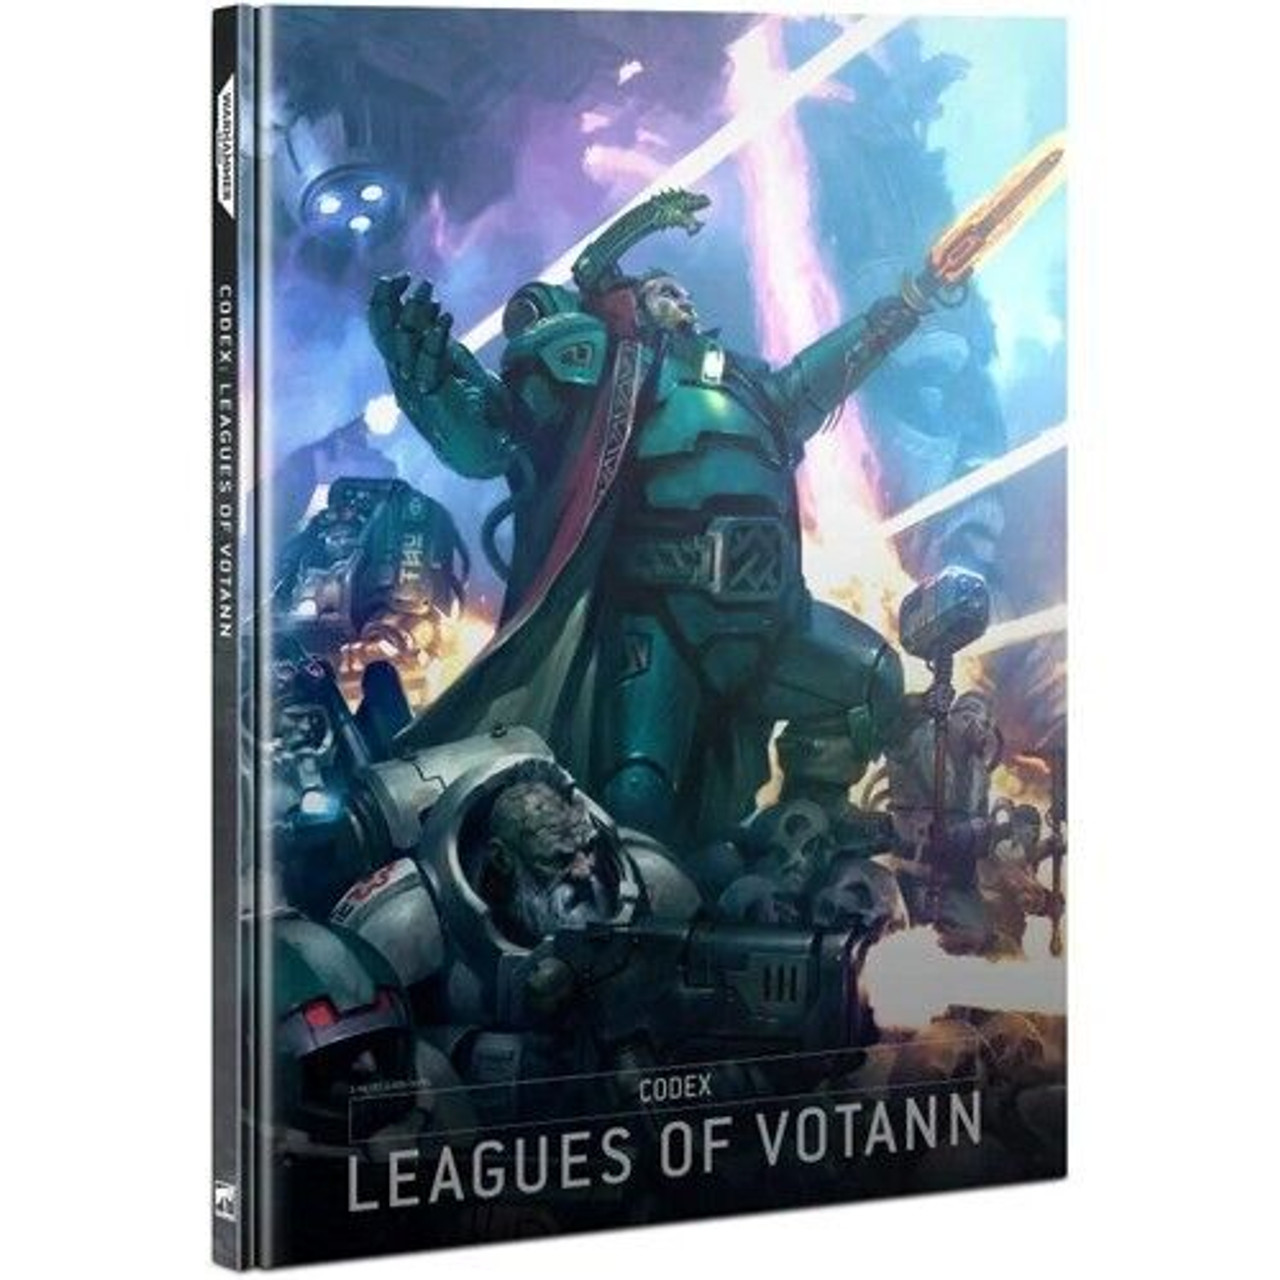 Warhammer 40K: Codex - Leagues of Votann